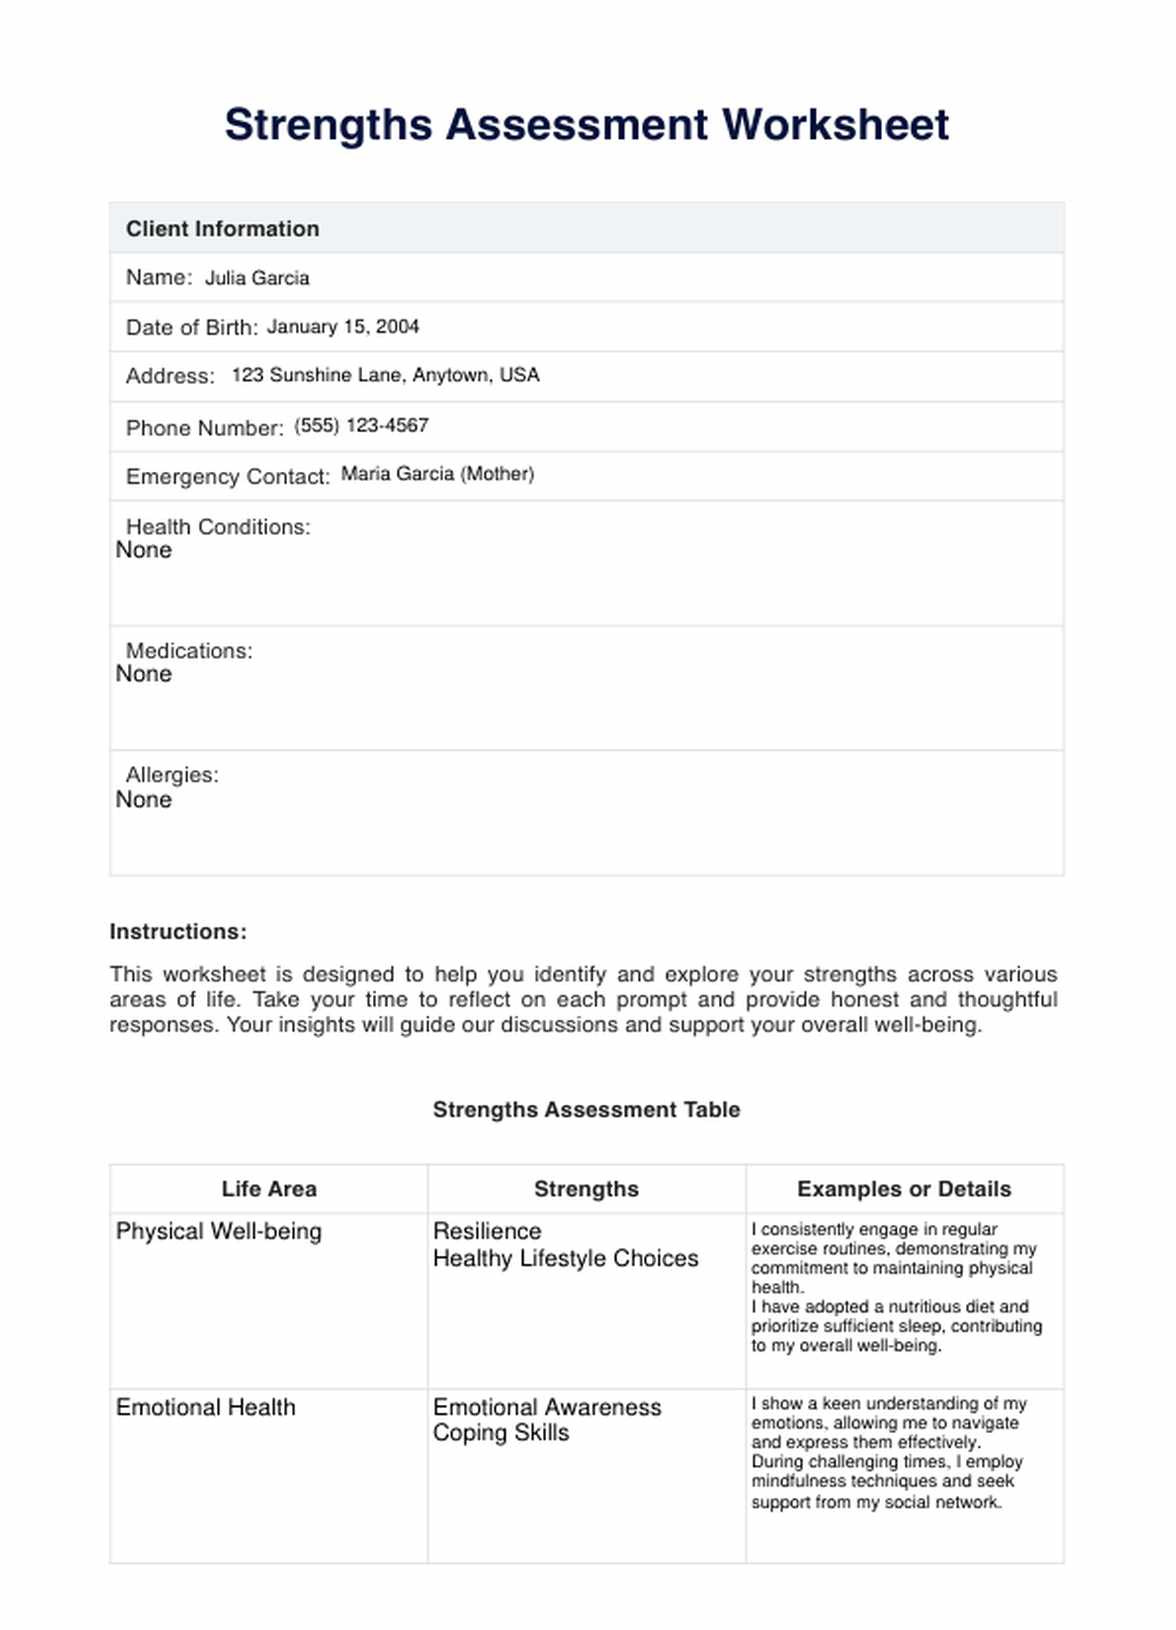 Strengths Assessment Worksheet PDF Example